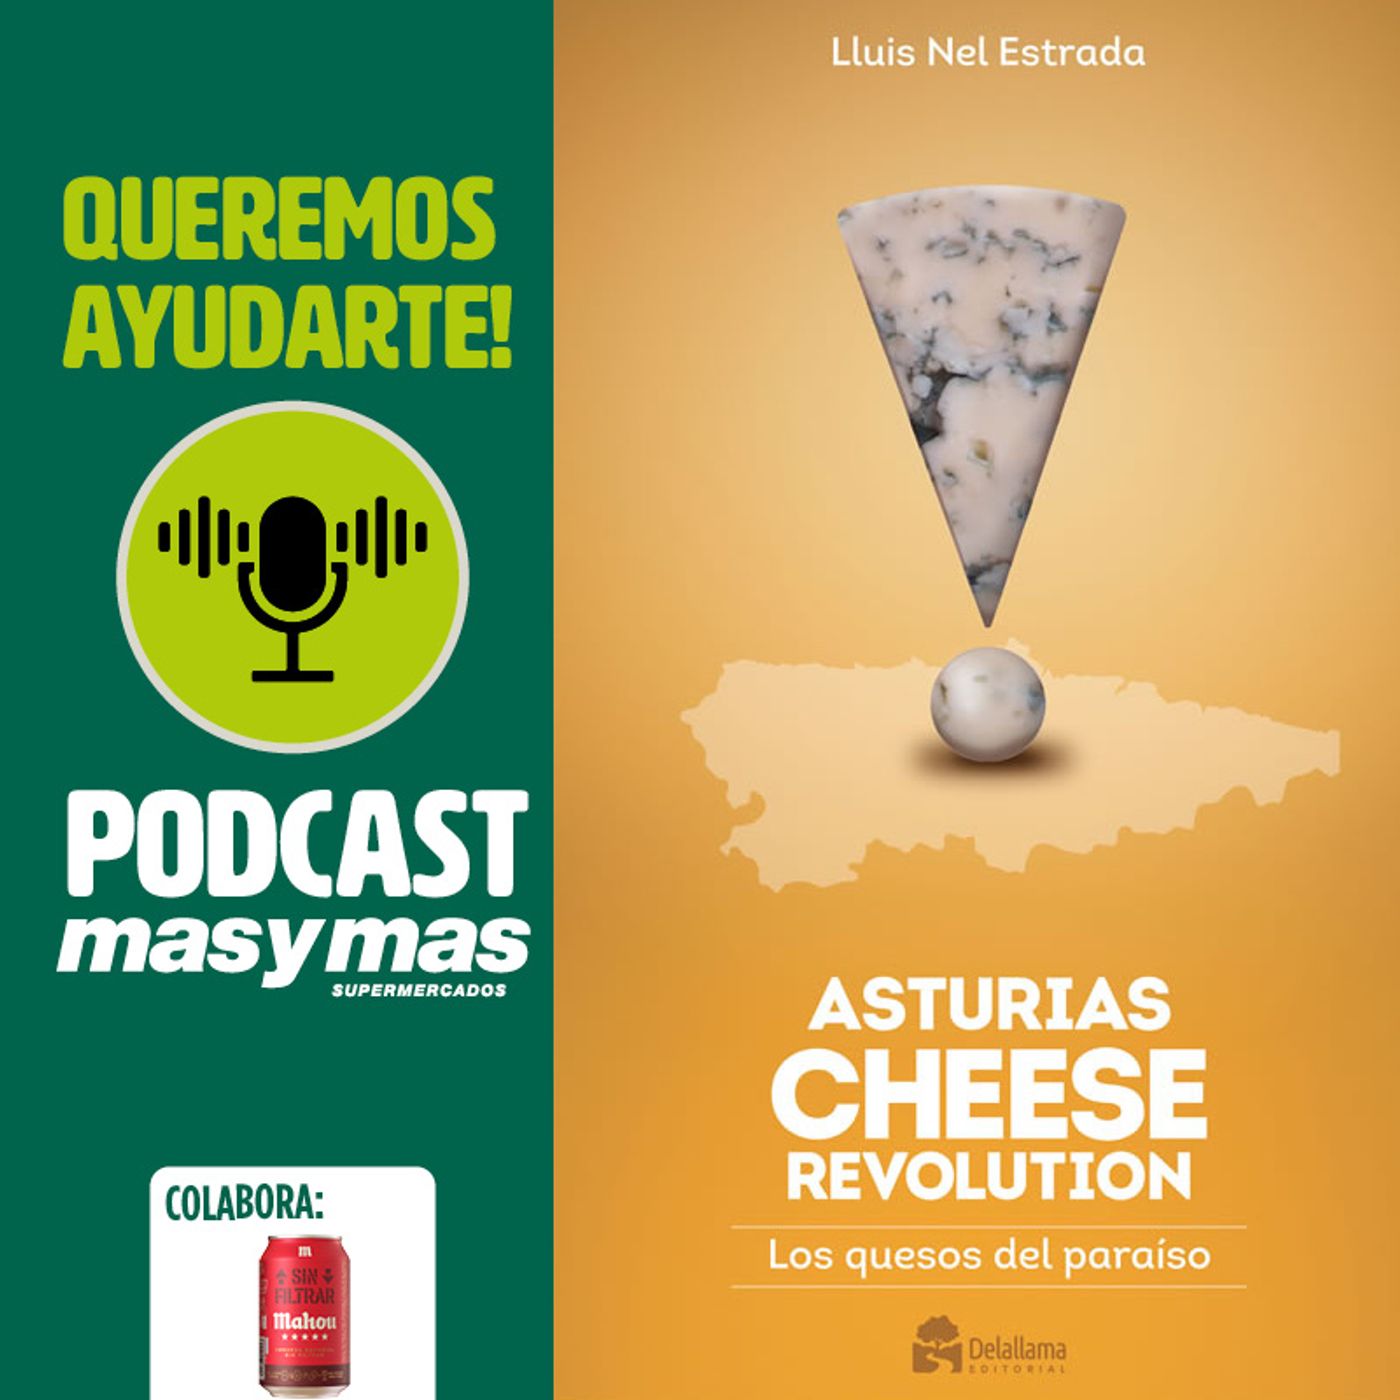 Los quesos asturianos. Un paseo con Lluis Nel Estrada por Asturias y su producción quesera